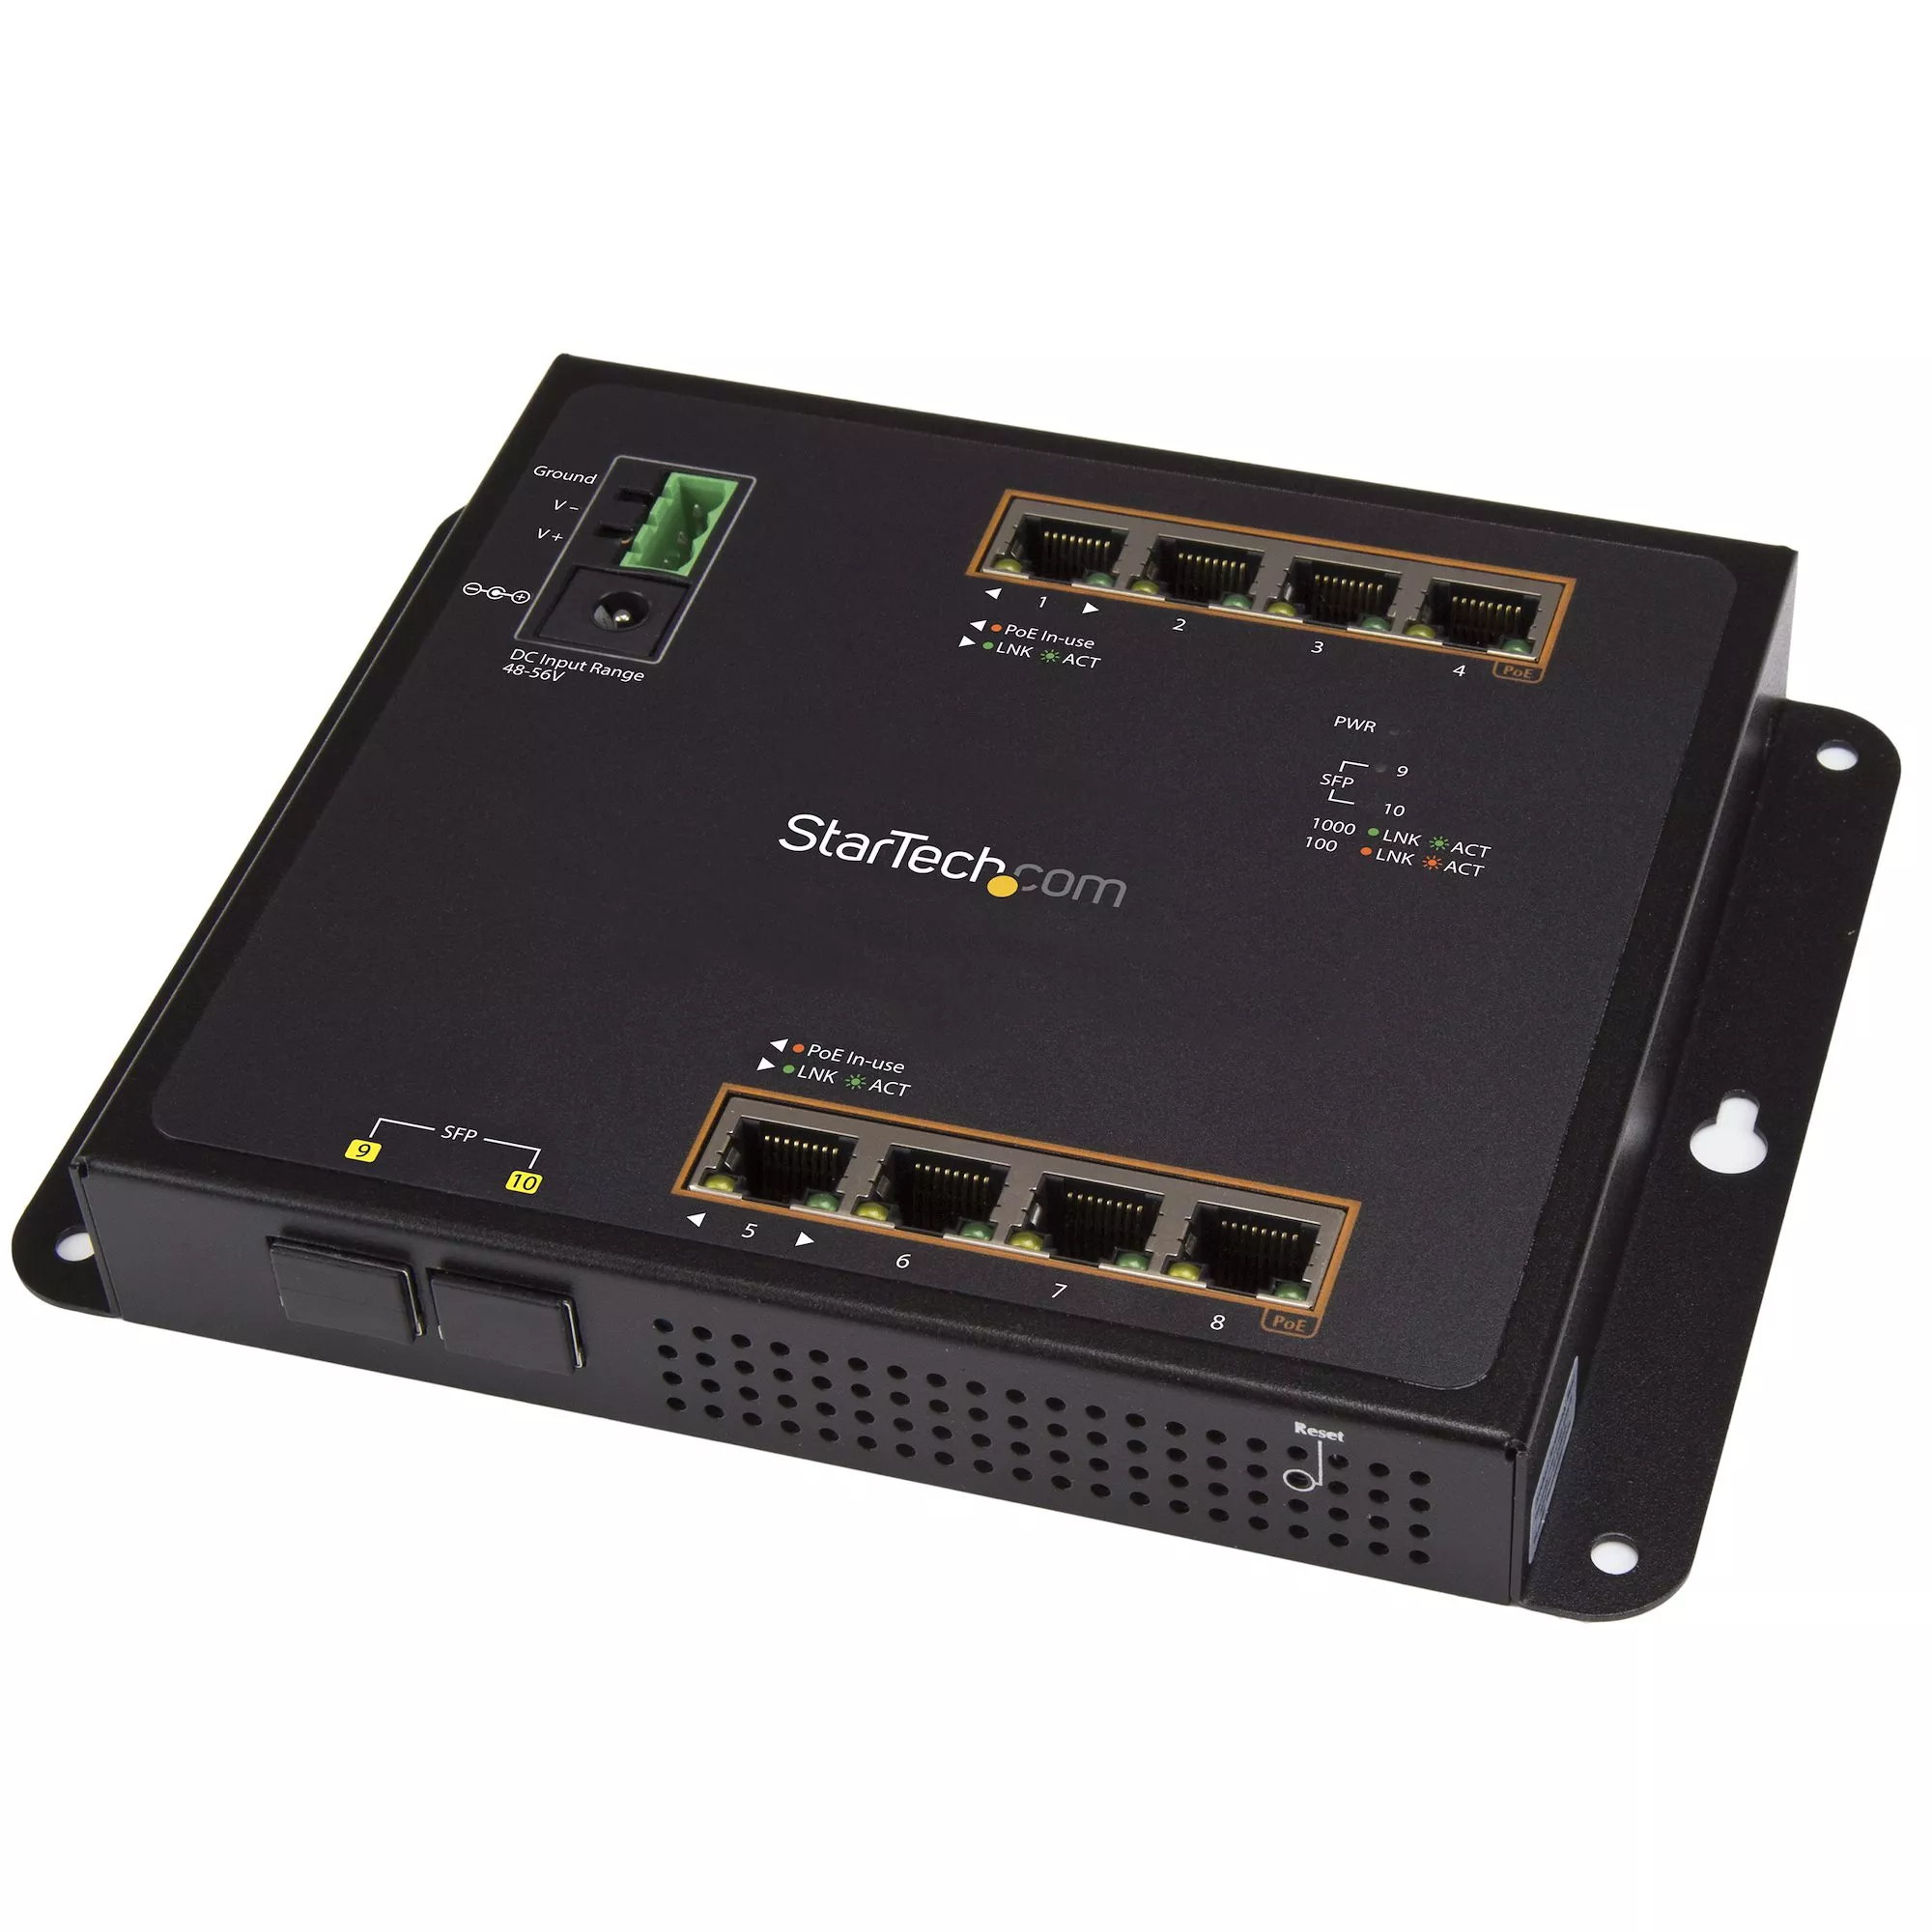 Achat StarTech.com Switch Industriel POE+ Gigabit Ethernet 8 ports au meilleur prix